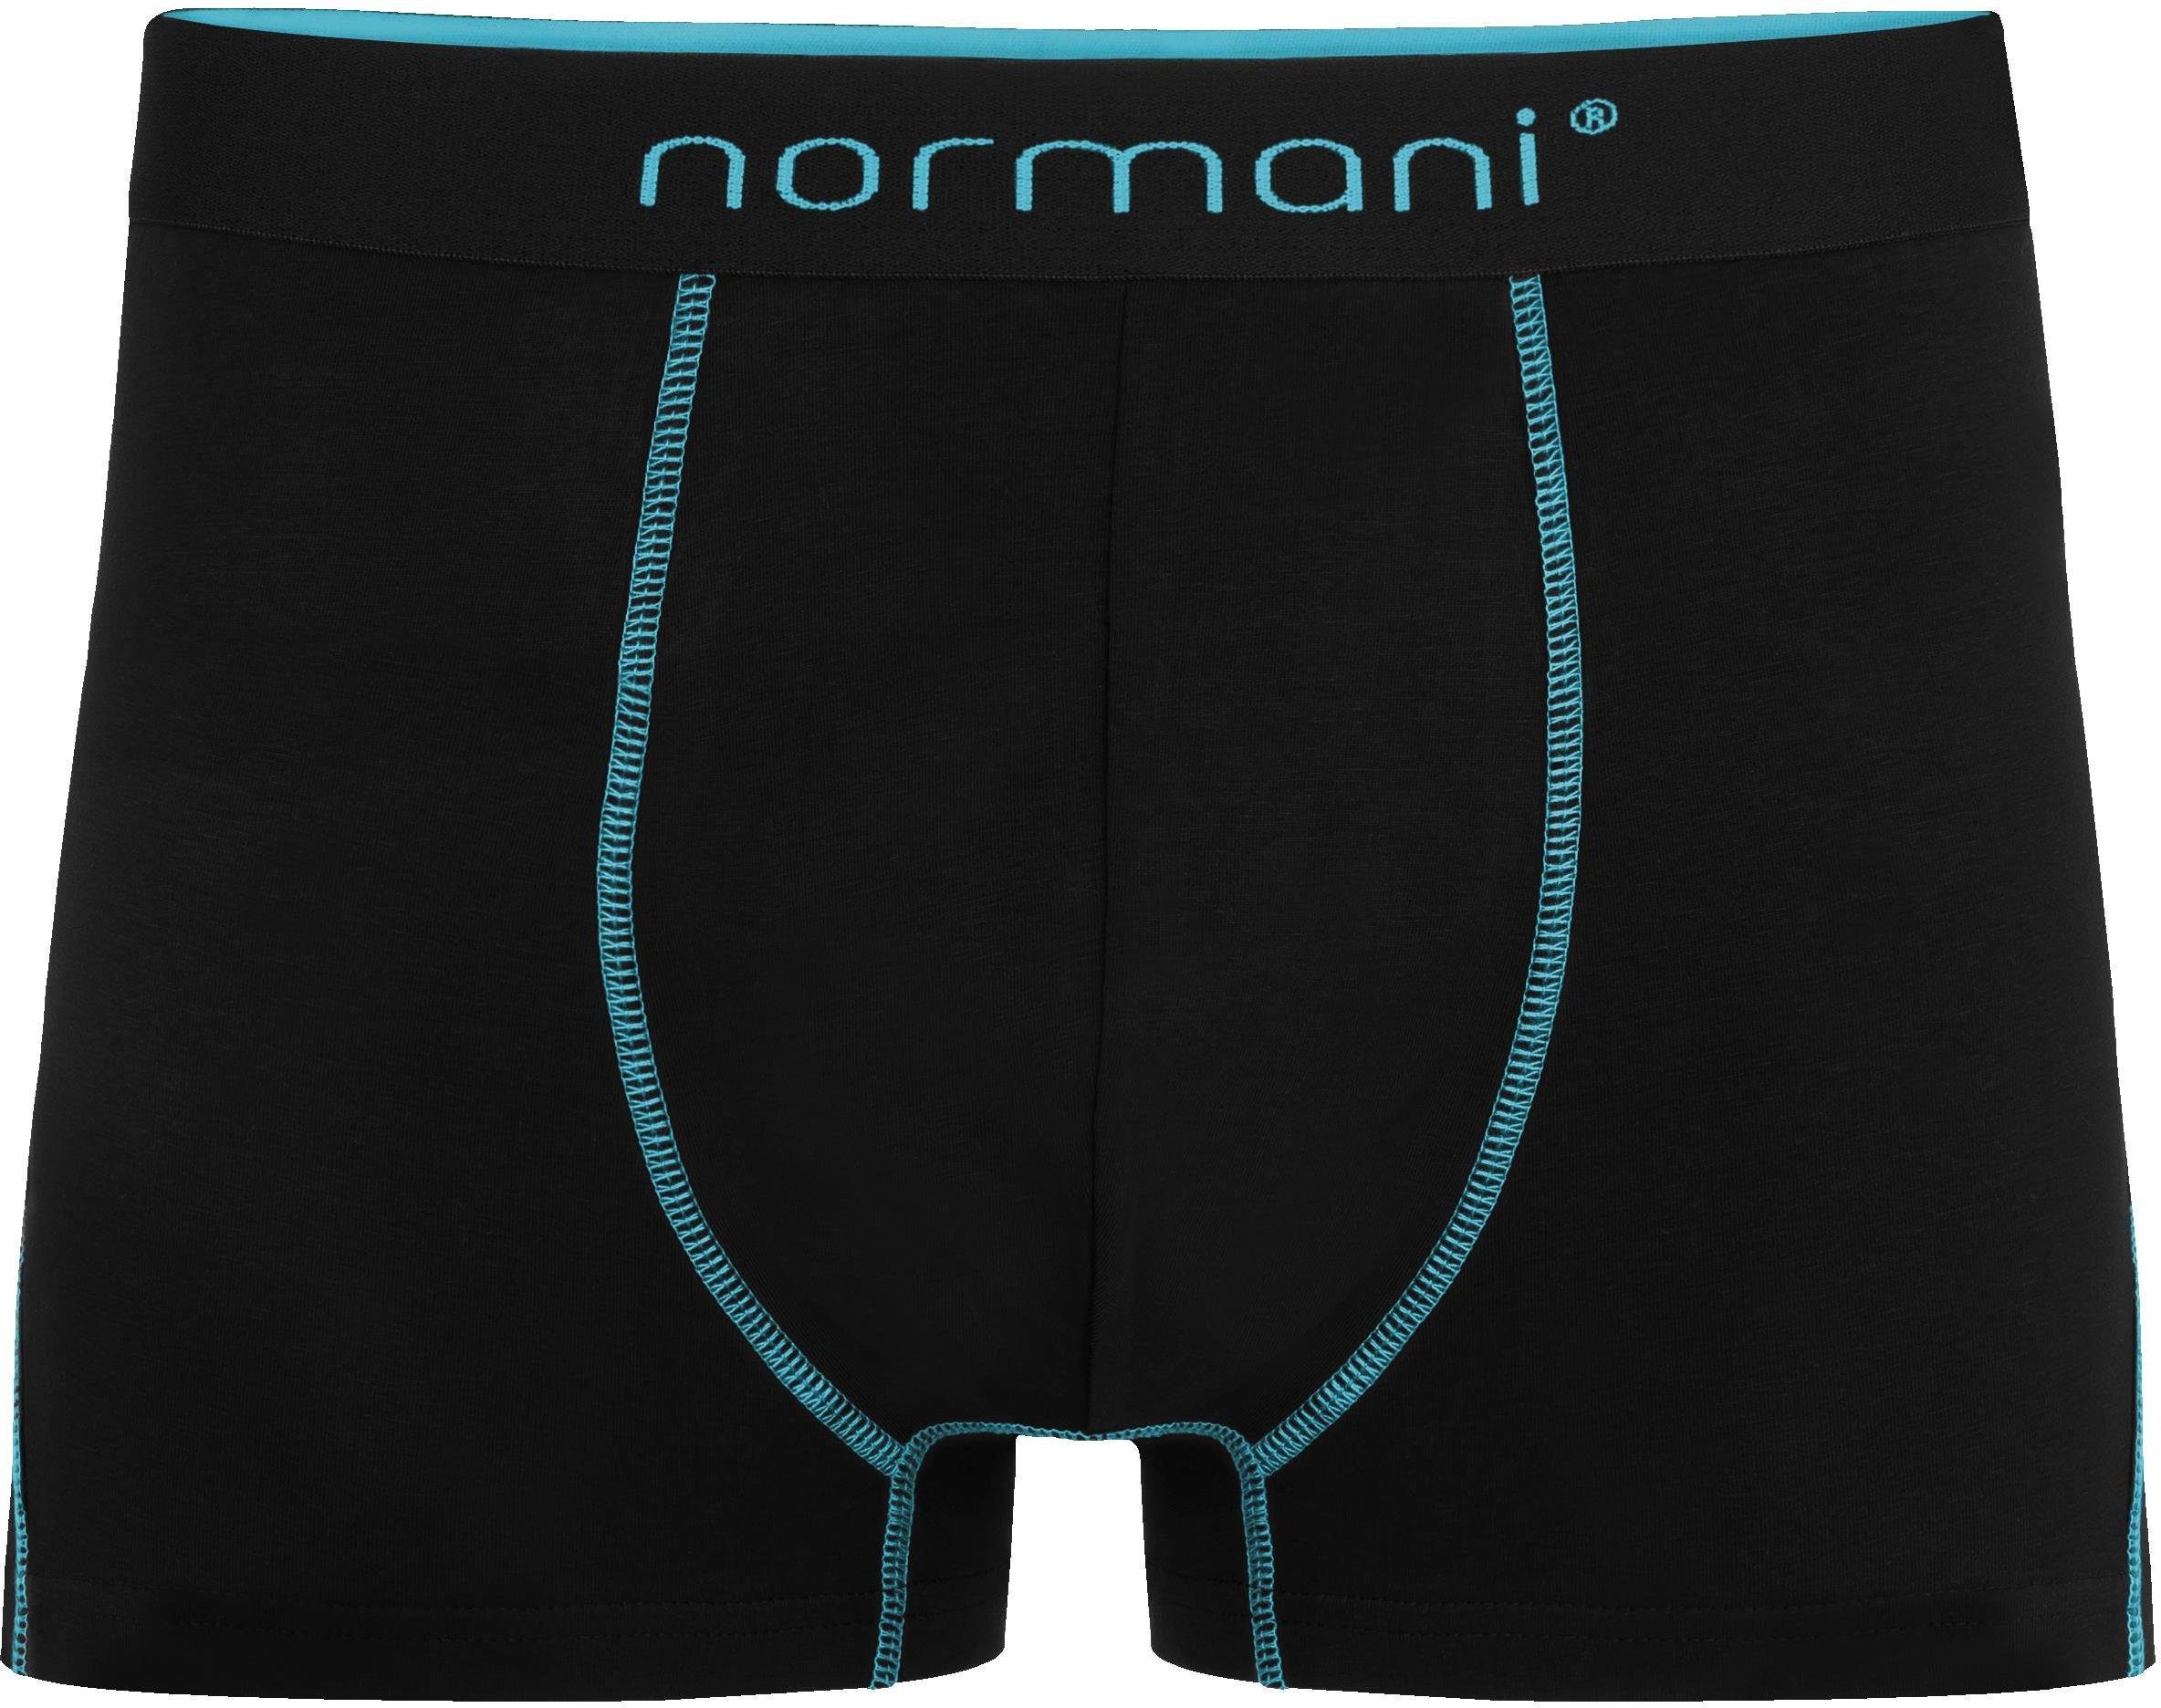 normani Boxershorts 12 x Herren atmungsaktiver Männer Baumwolle Türkis Baumwoll-Boxershorts für aus Unterhose